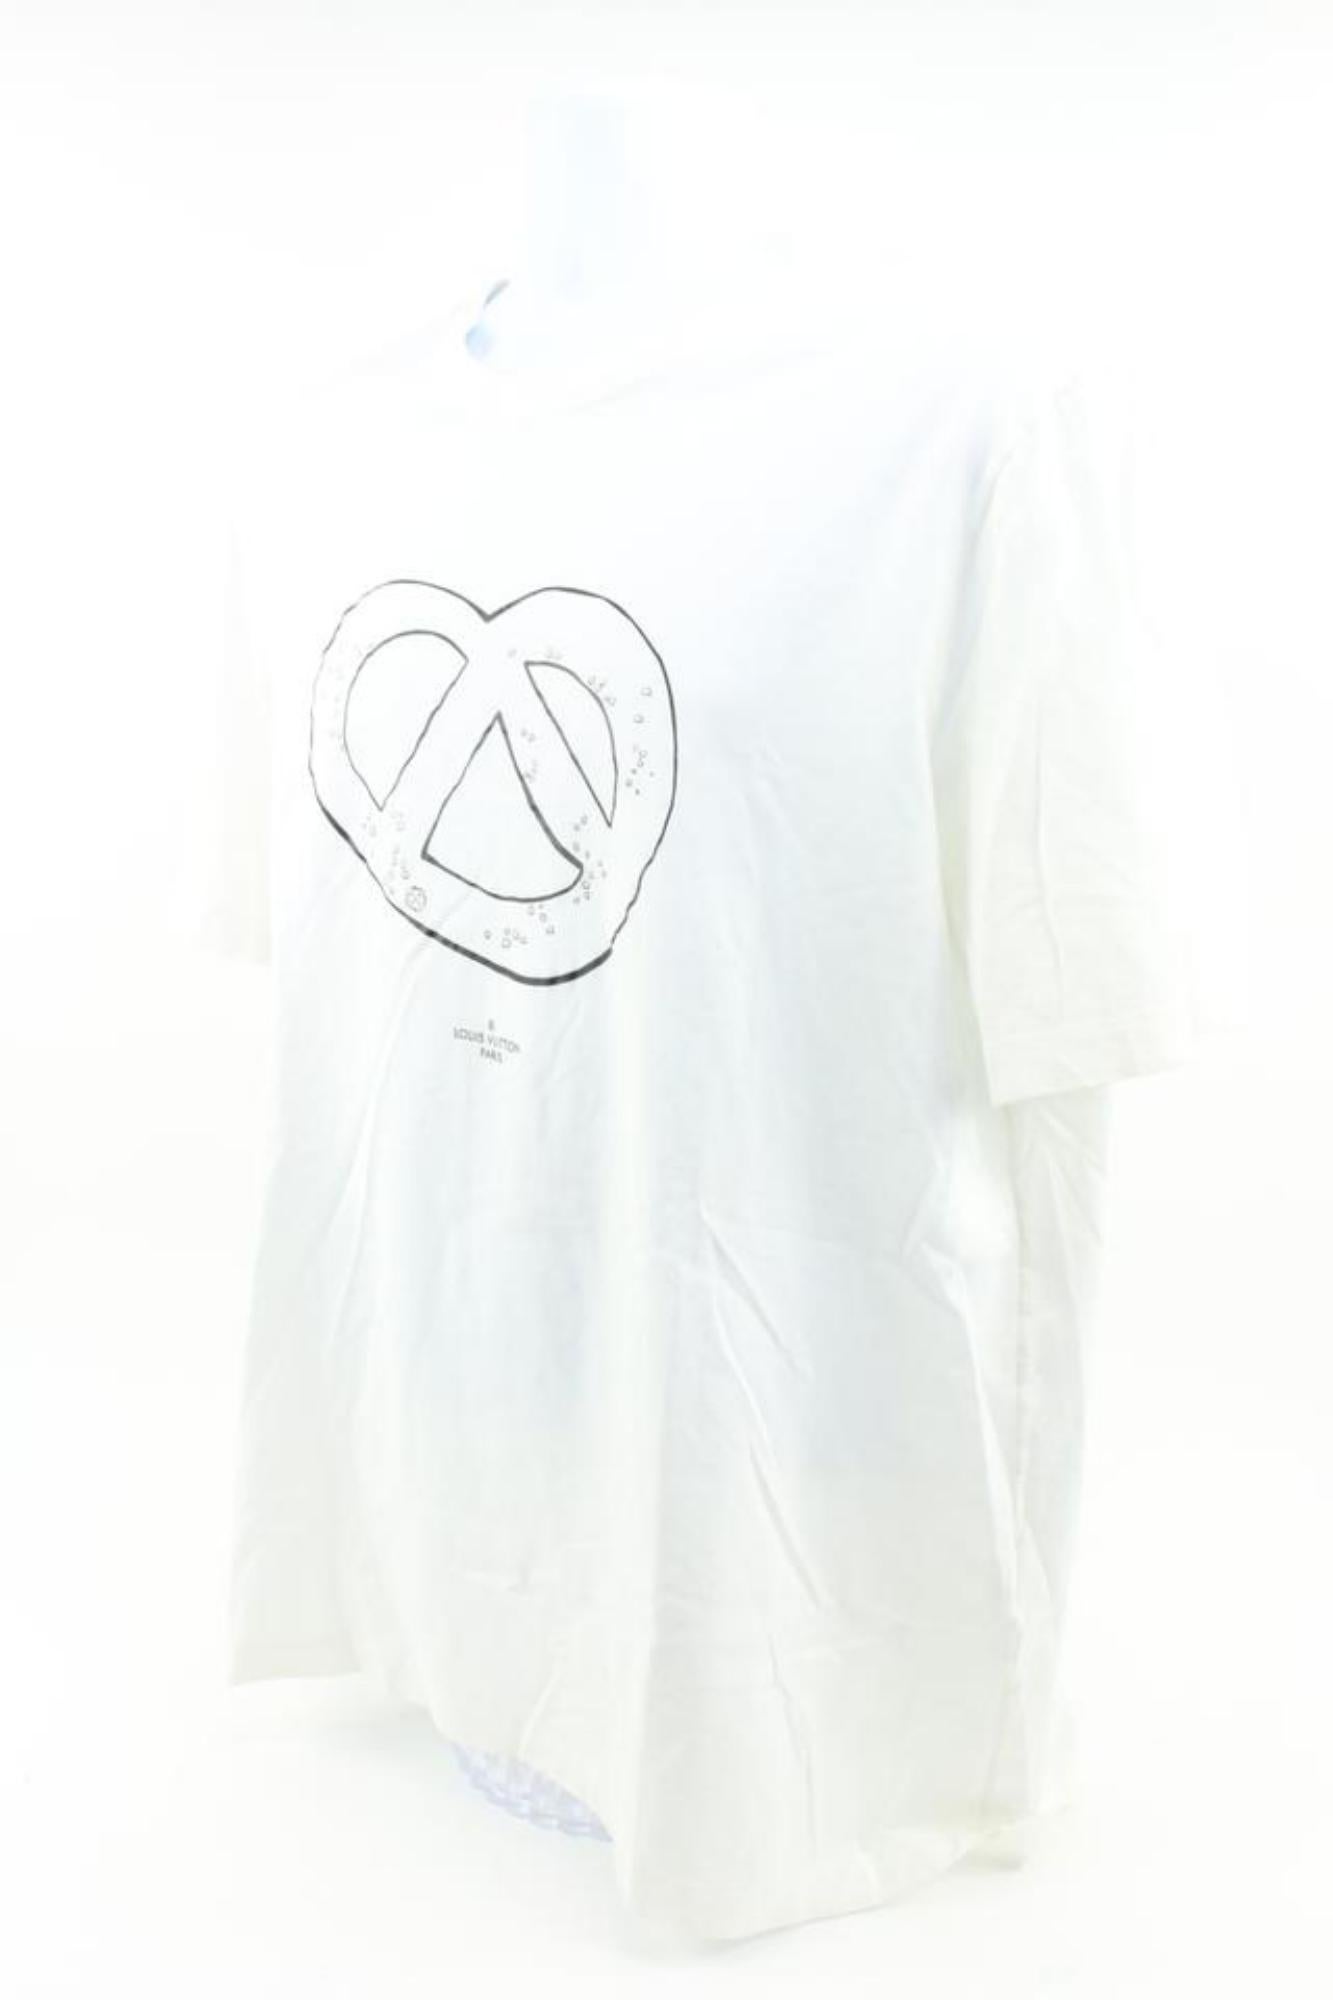 Louis Vuitton Men's XXXL Limited LV Salt Pretzel T-Shirt 120lv29 In Excellent Condition For Sale In Dix hills, NY